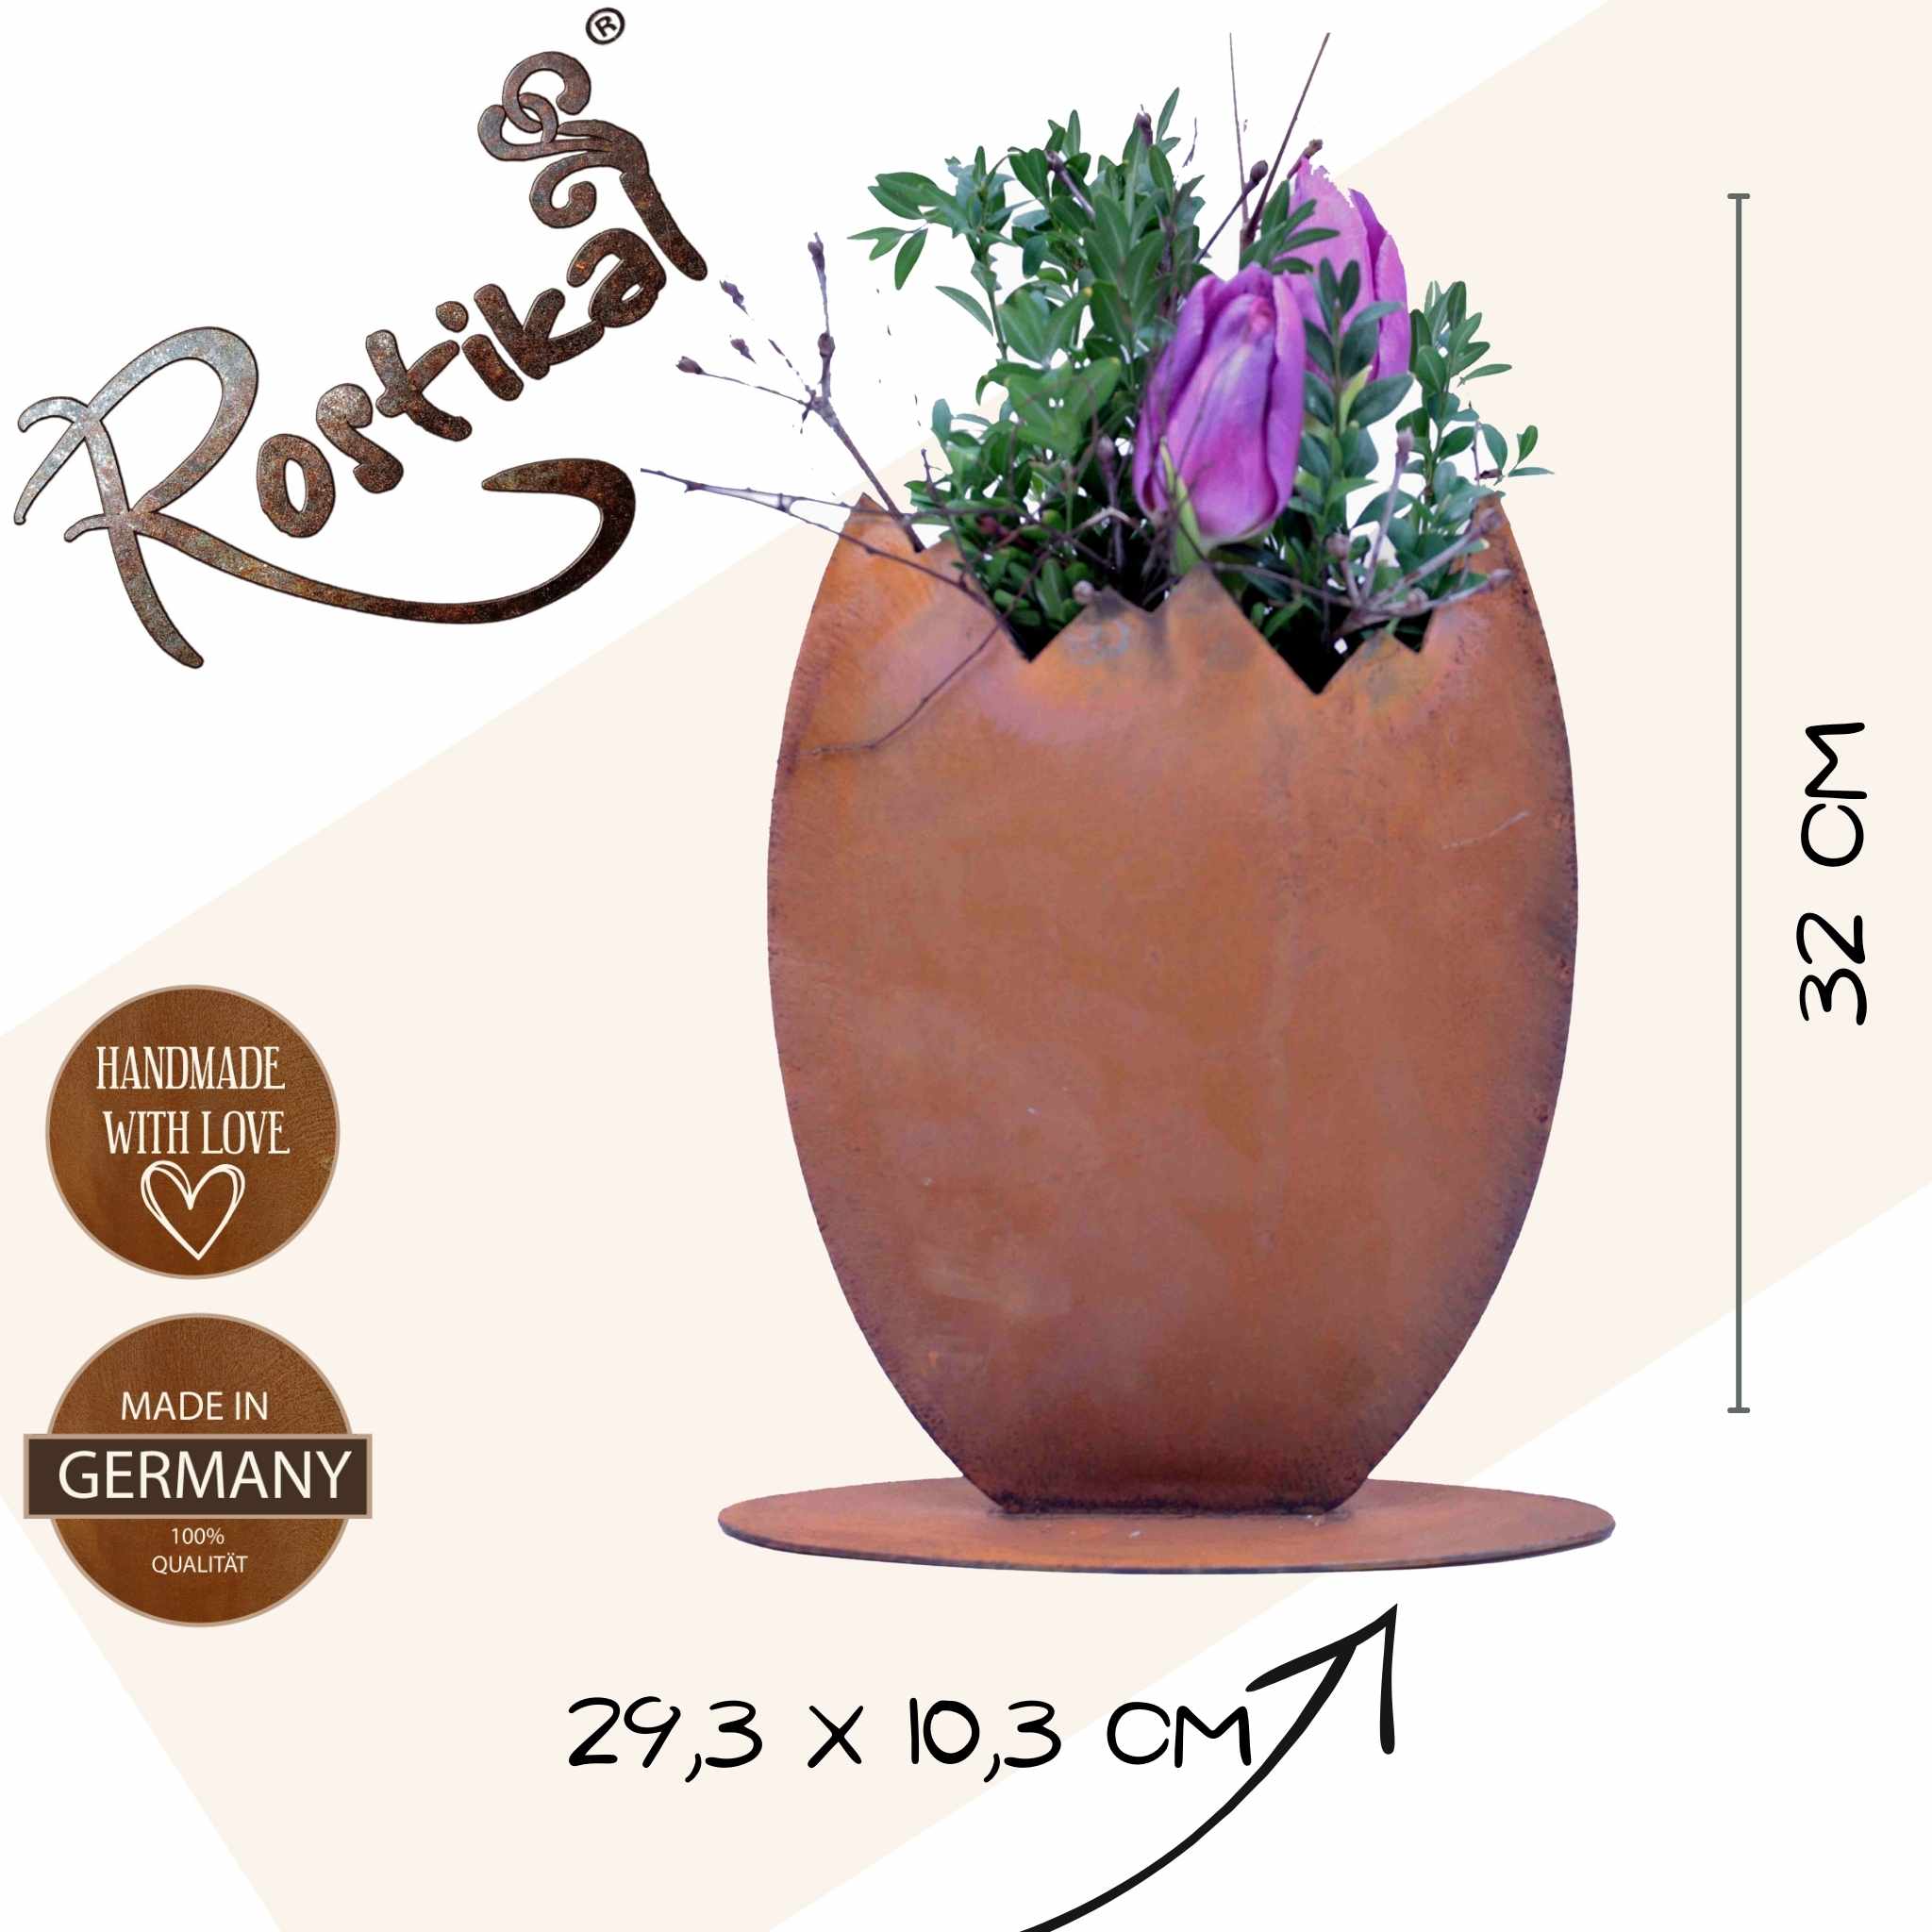 Österliches Rost-Metall-Ei: Bepflanzbare Gartendeko, ideal für farbenfrohe Frühlingsblumen, Osterdekoration & eine warme, einladende Optik. 